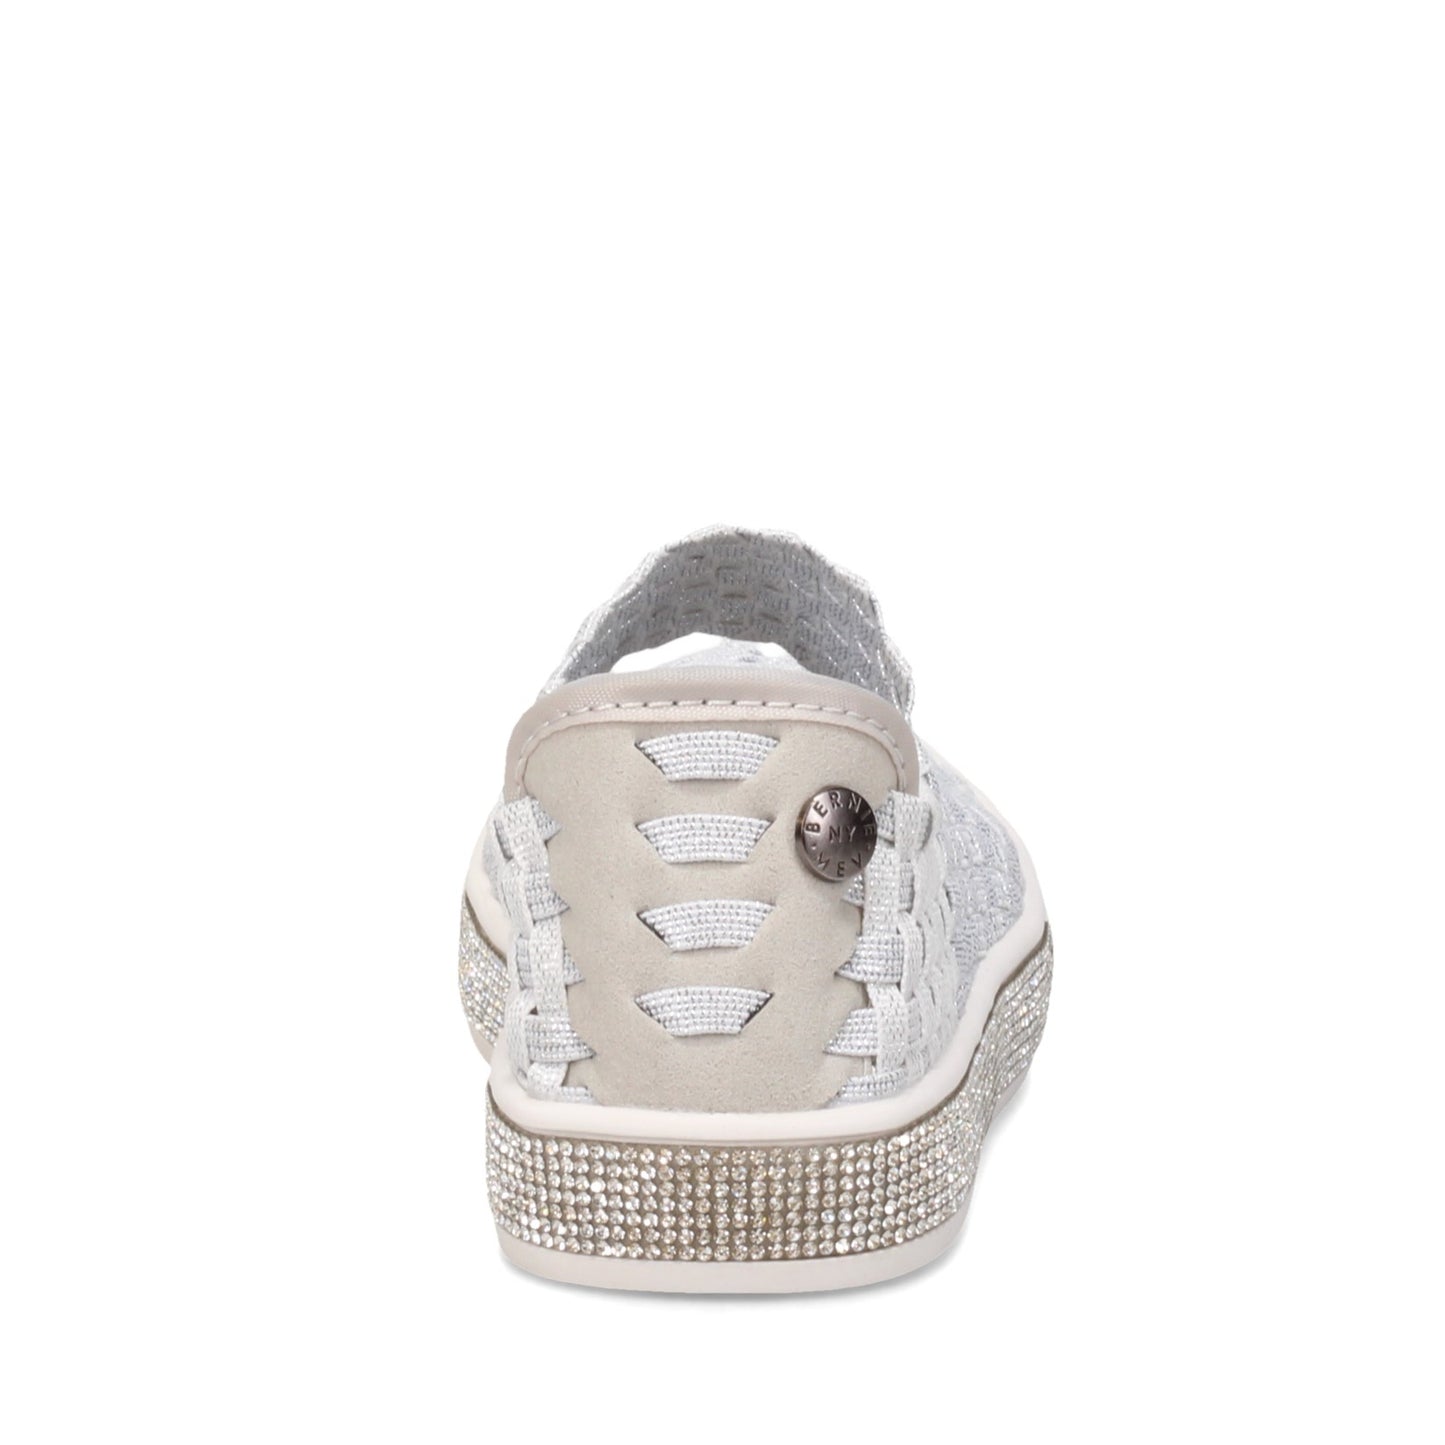 Peltz Shoes  Girl's Bernie Mev Spark Sydney Slip-On - Toddler & Little Kid WHITE SHIMMER SPARKSYDNEYK-WH